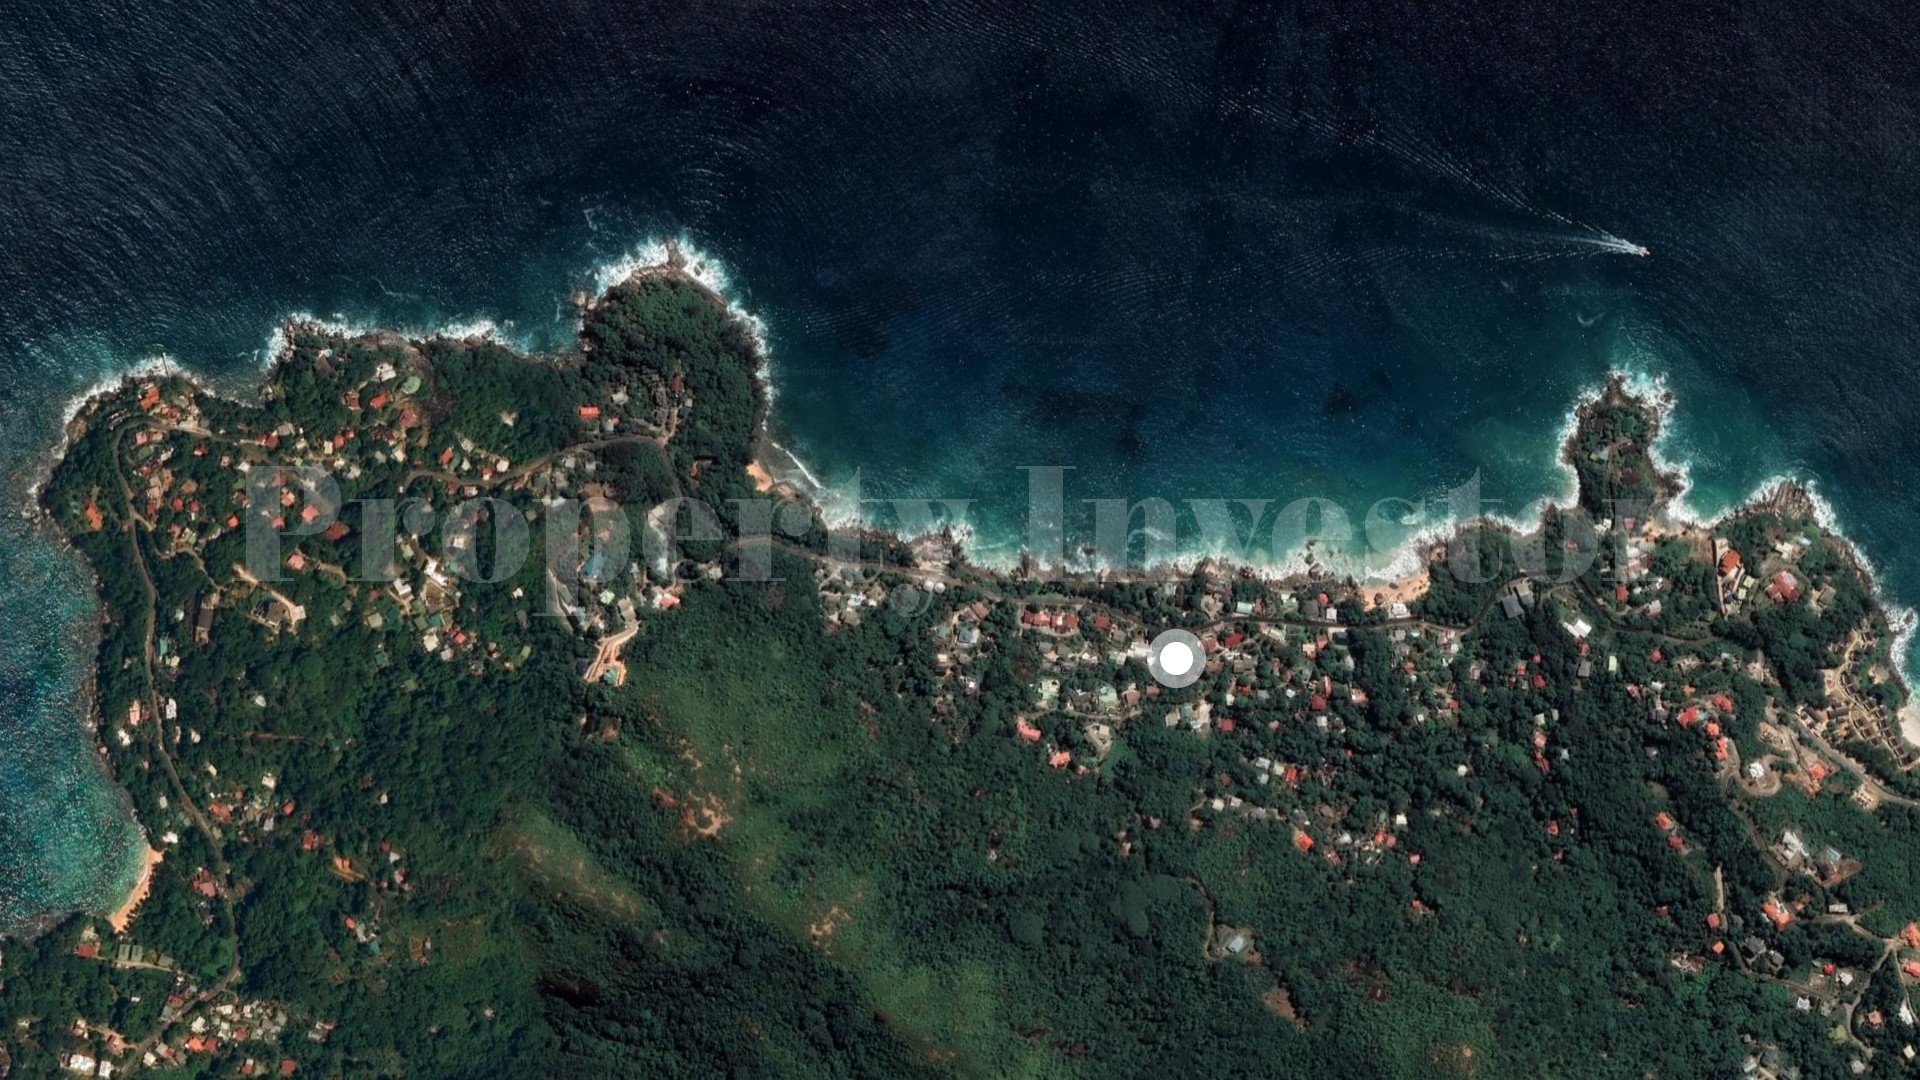 Участок земли 49,3 сотки расположенный в отличном месте под жилой или коммерческий проект на севере о.Маэ, Сейшелы